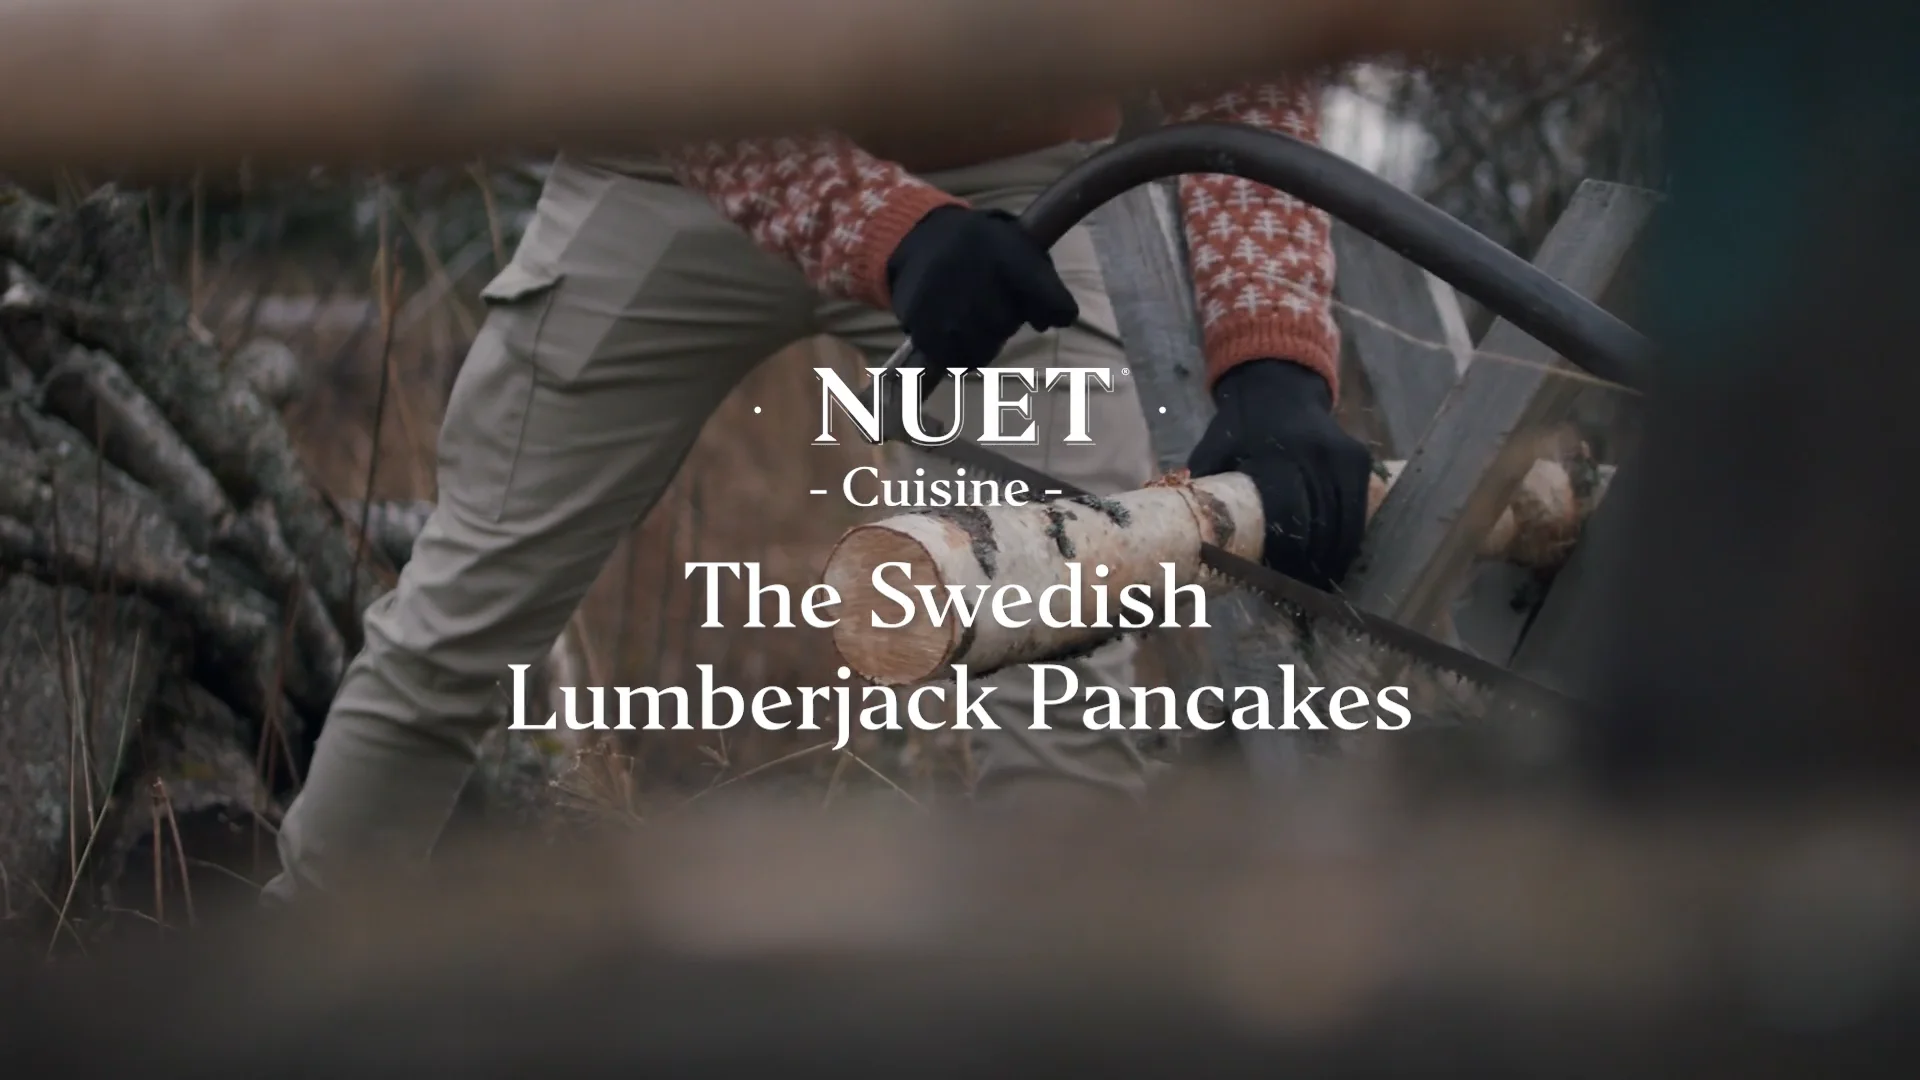 Nordic Ware Pancake Pans on Vimeo